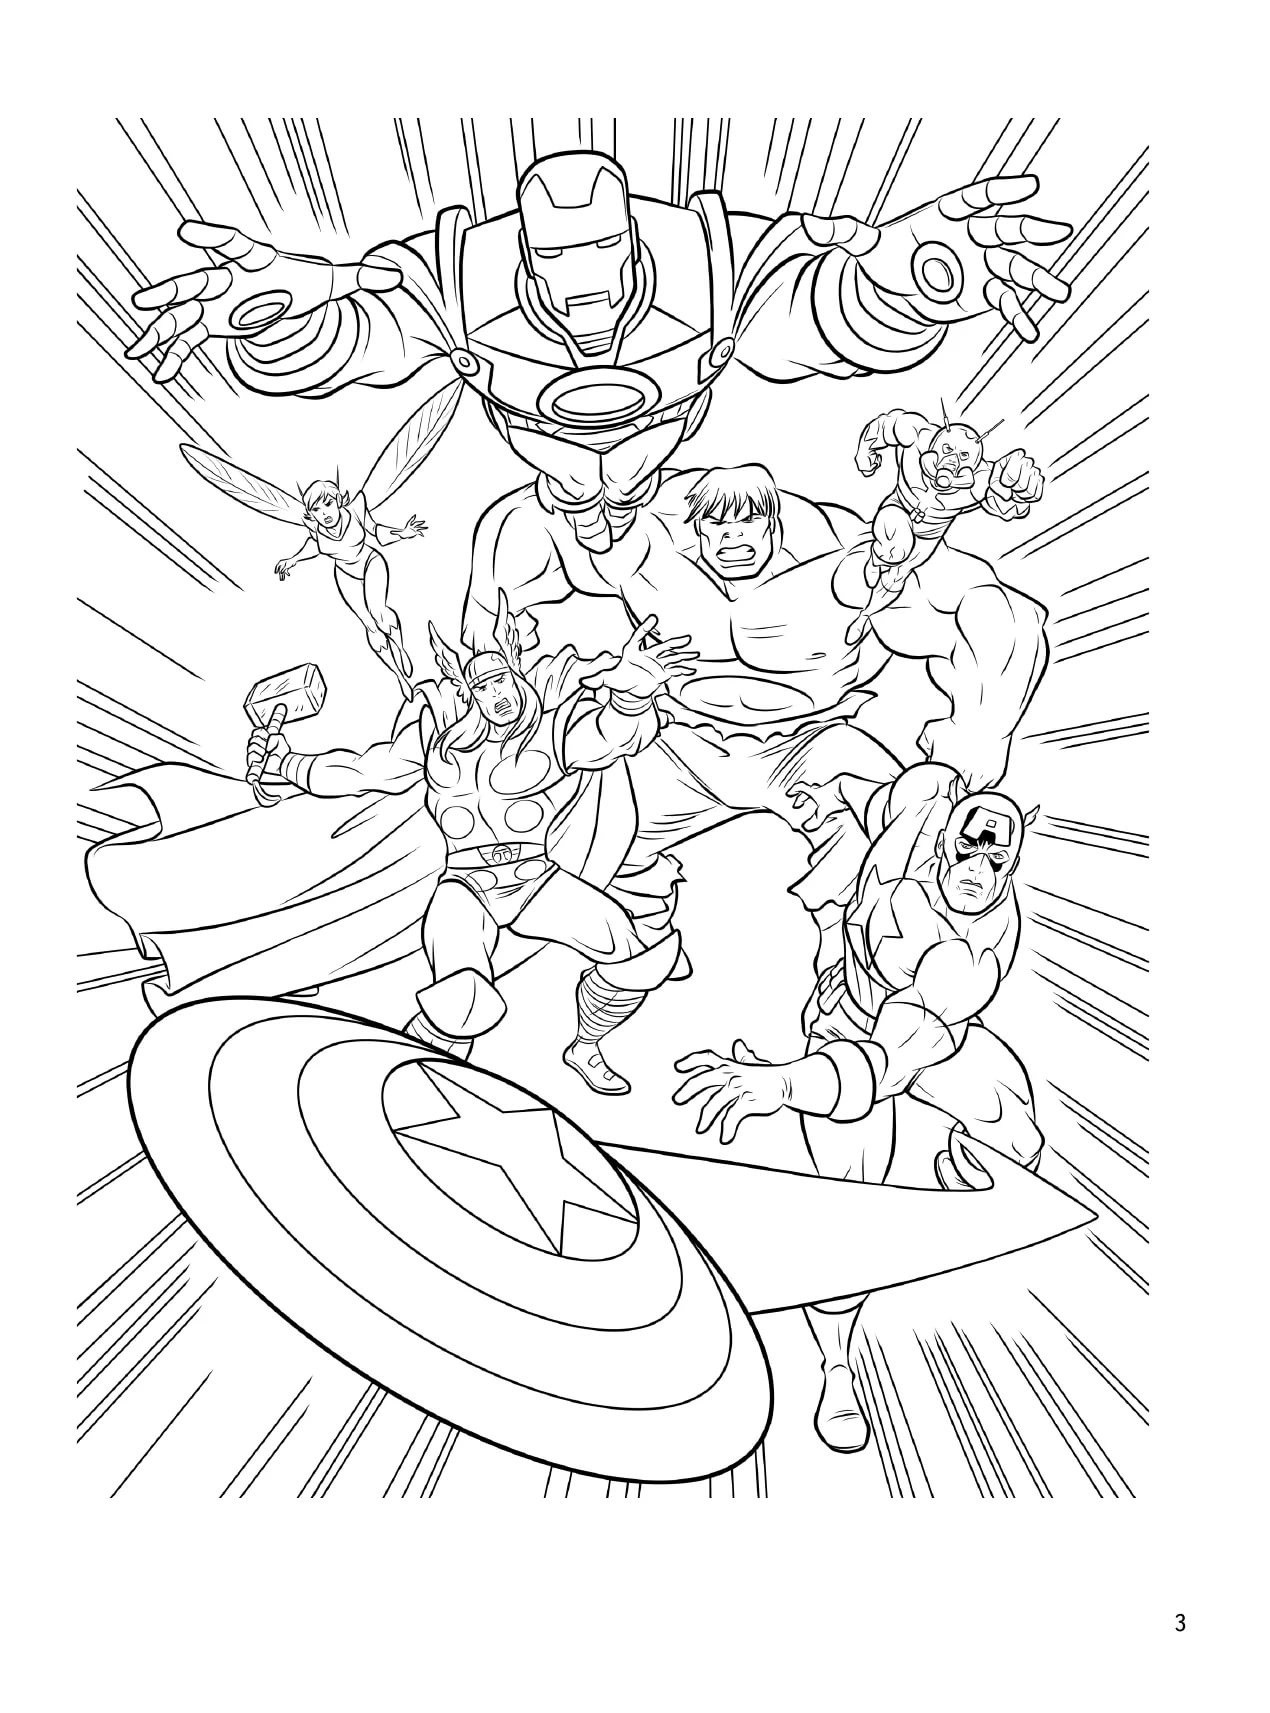 Dibujo 04 de Avengers para imprimir y colorear